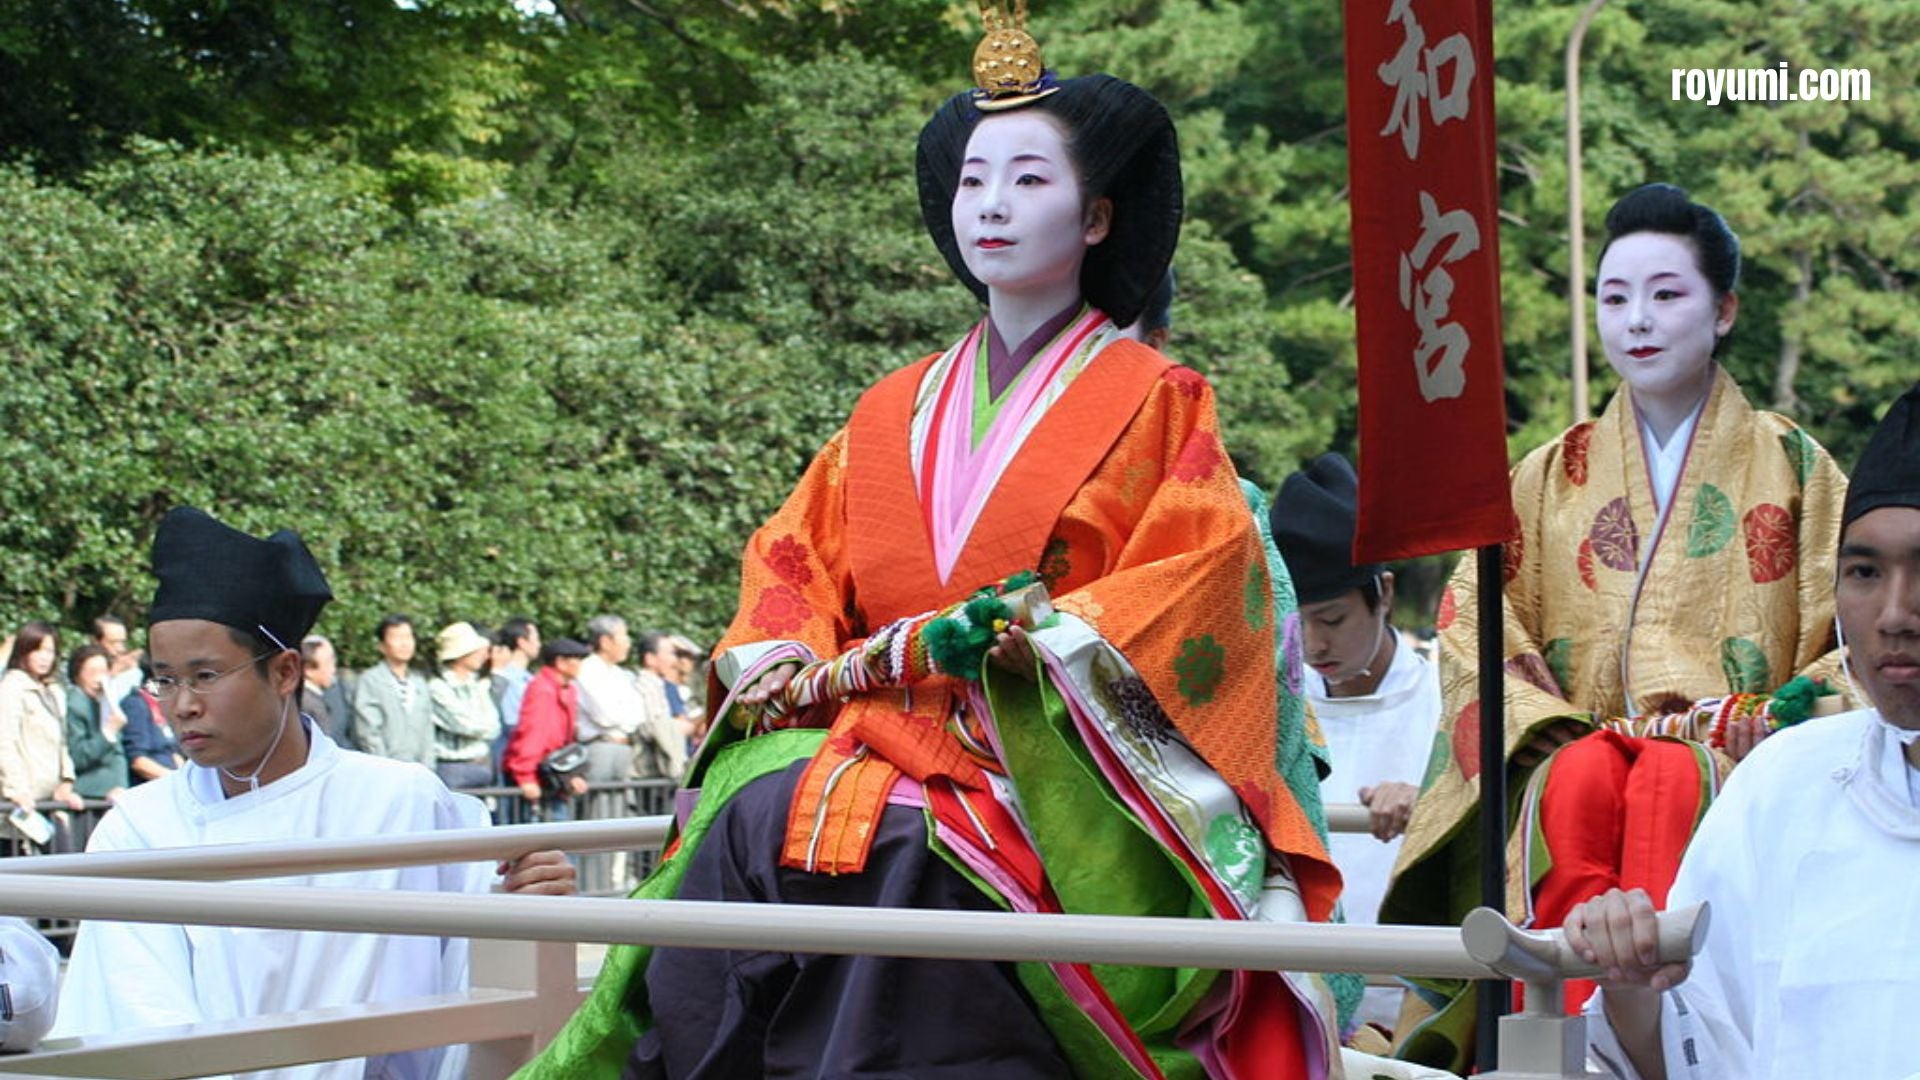 日本の平安時代: ヨーロッパ、アジア、アメリカ、アフリカと比較した日本文化の黄金時代